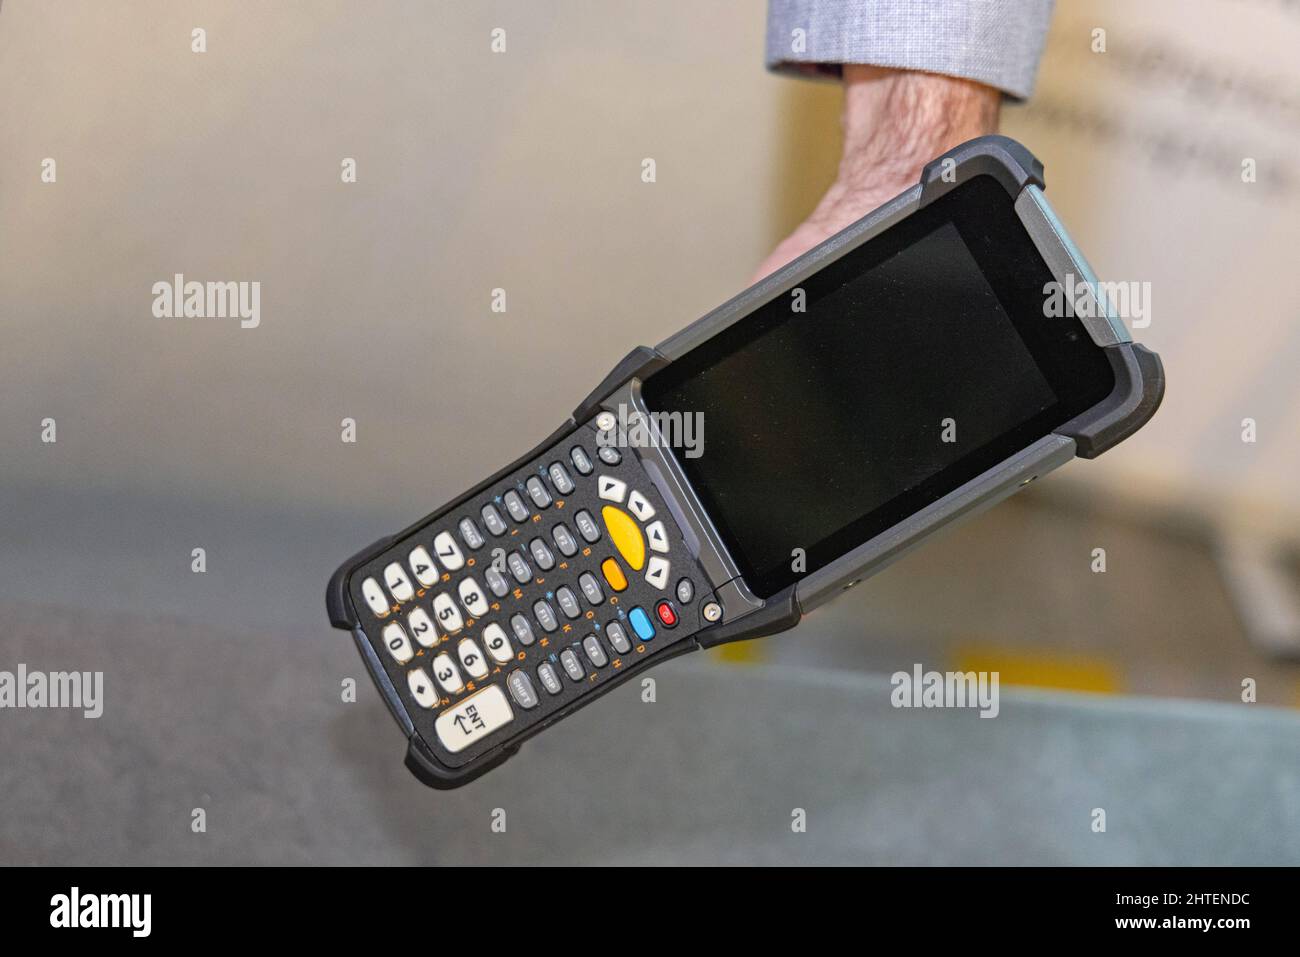 Apparecchiature tecnologiche per scanner portatili portatili palmari per magazzino Foto Stock